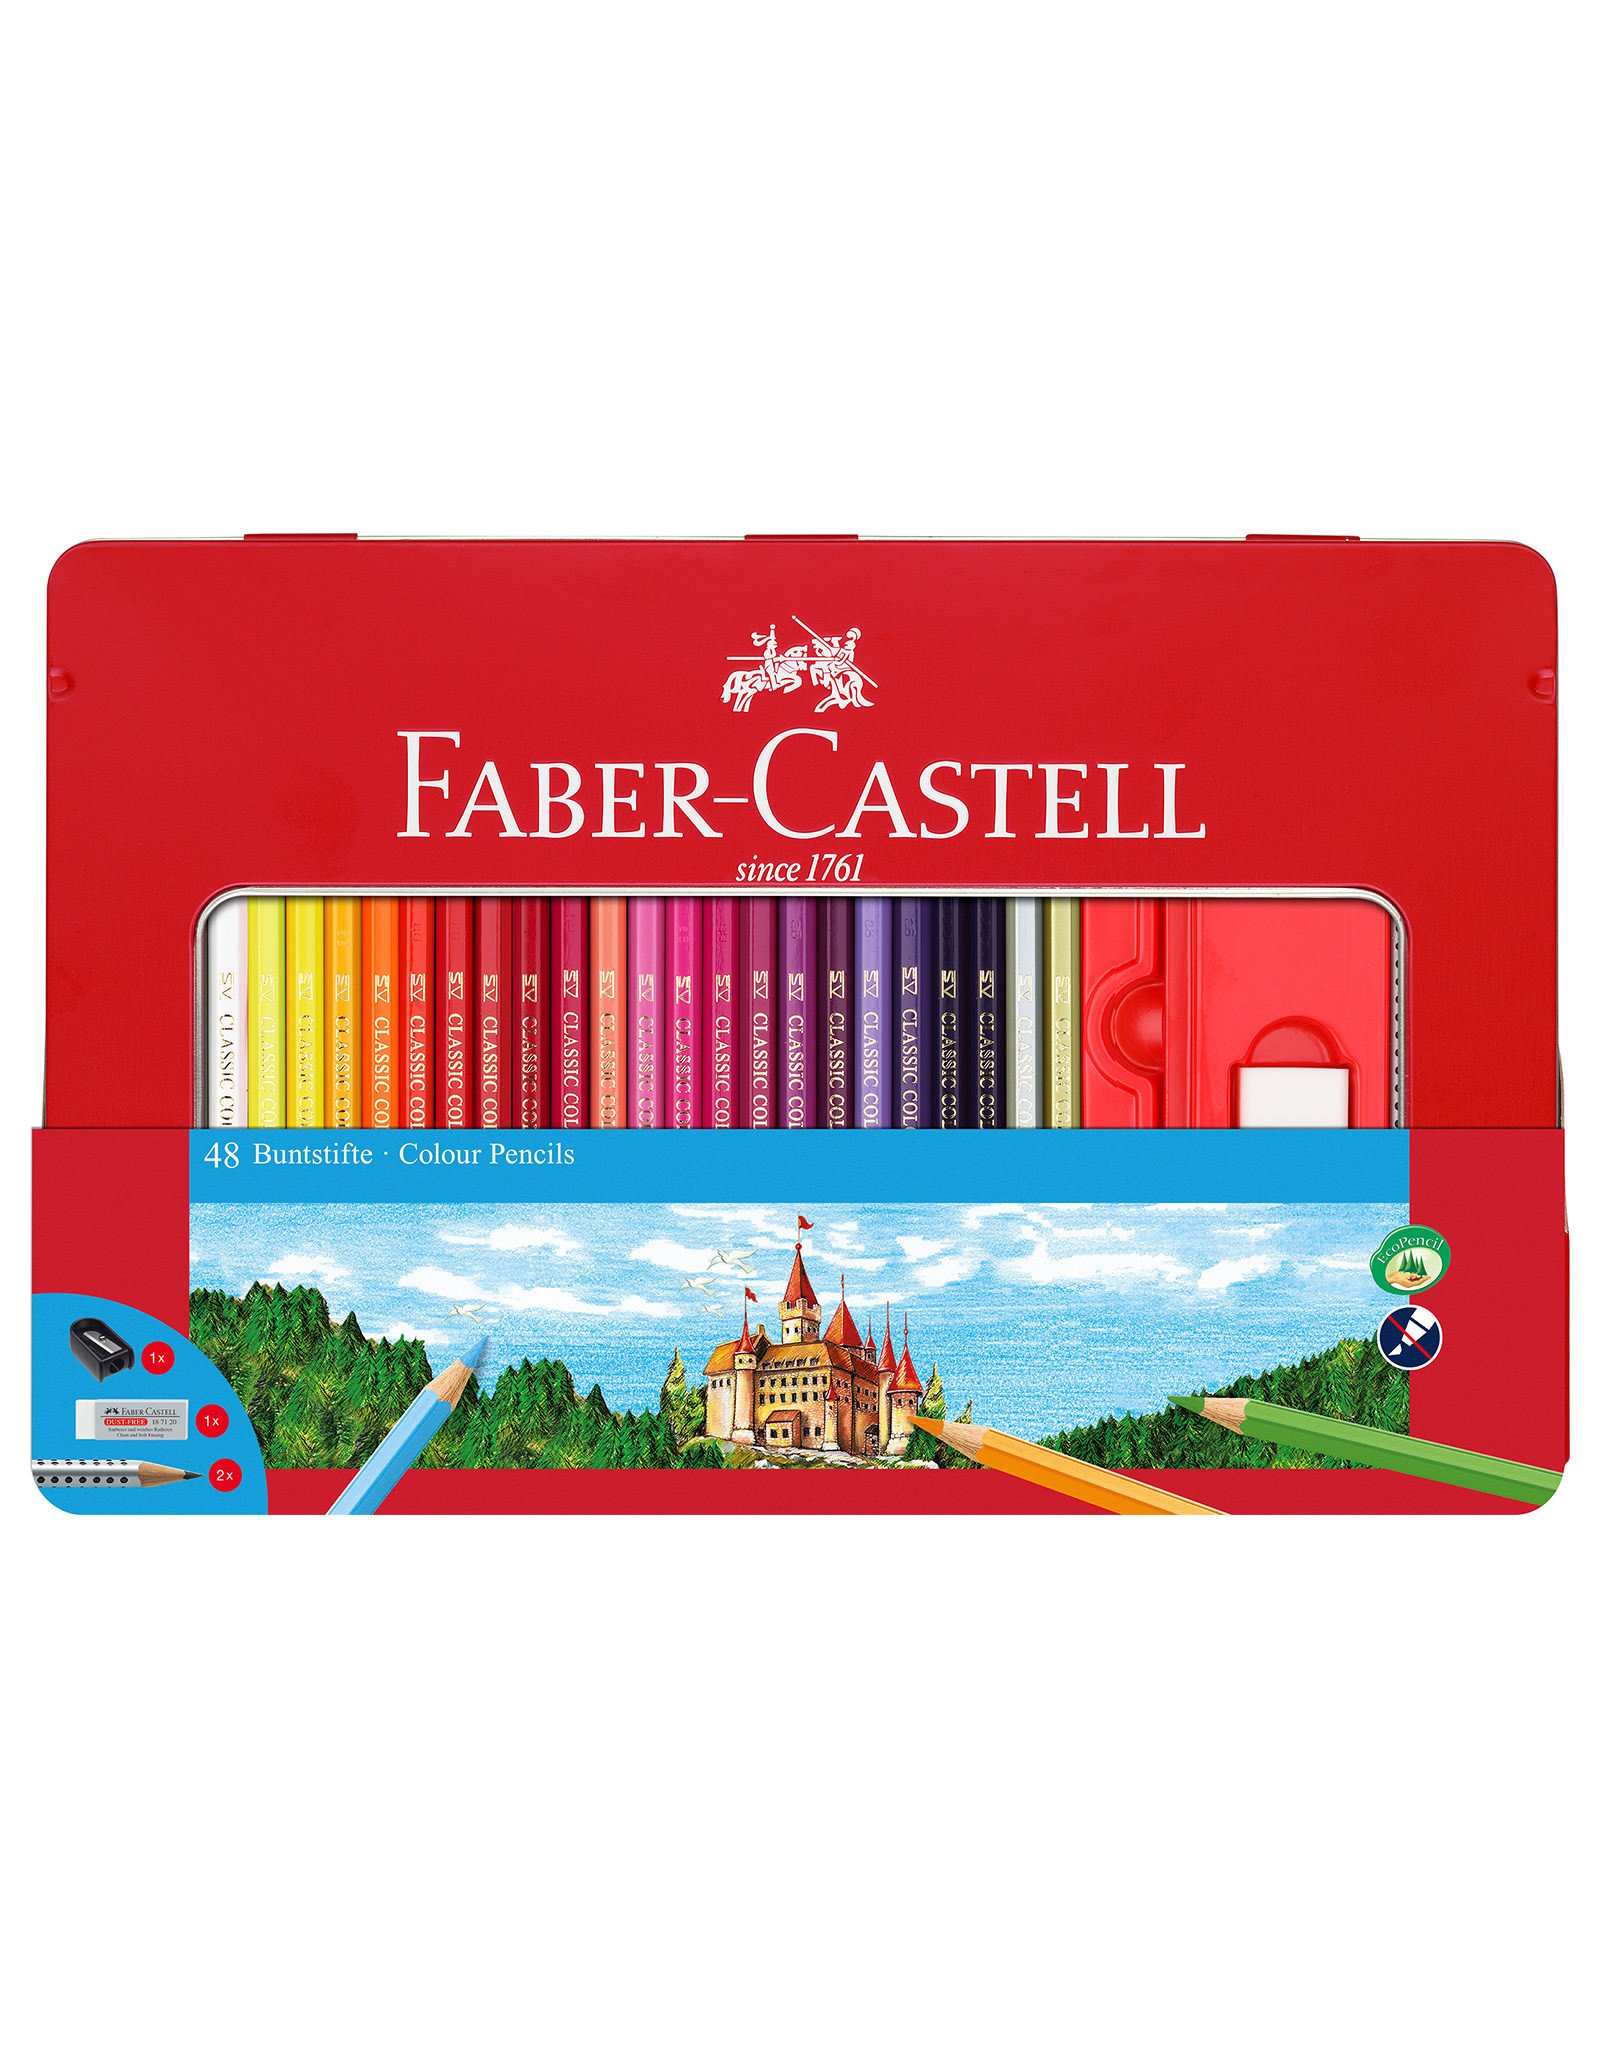 https://cdn.shoplightspeed.com/shops/636894/files/54557151/1600x2048x2/faber-castell-faber-castell-classic-color-pencil-a.jpg